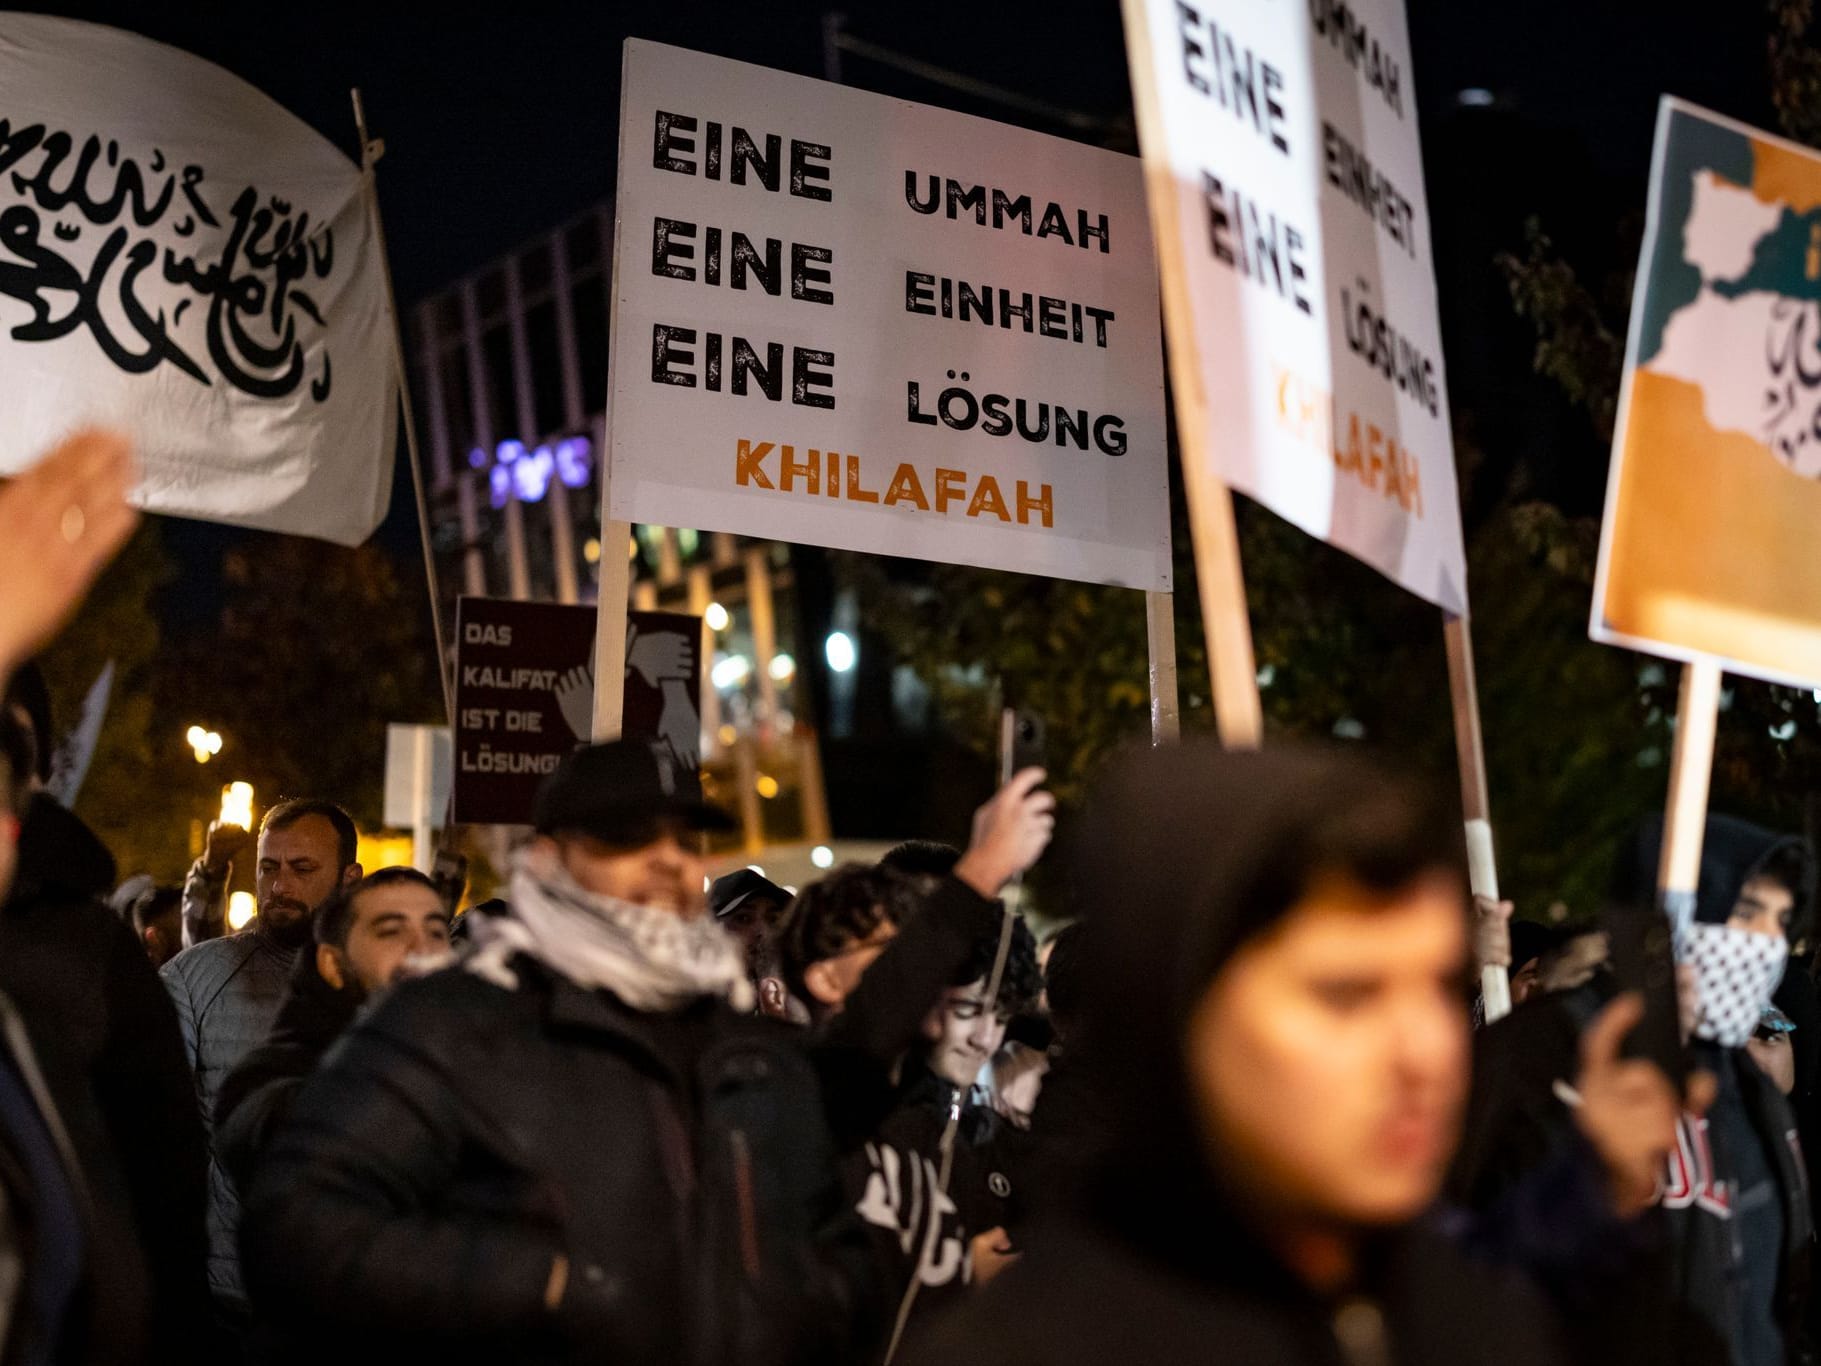 Großdemonstration in Essen: Schilder und Fotos werden bei der Pro-Palästina Kundgebung "Gaza unter Beschuss - gemeinsam gegen das Unrecht" gezeigt.